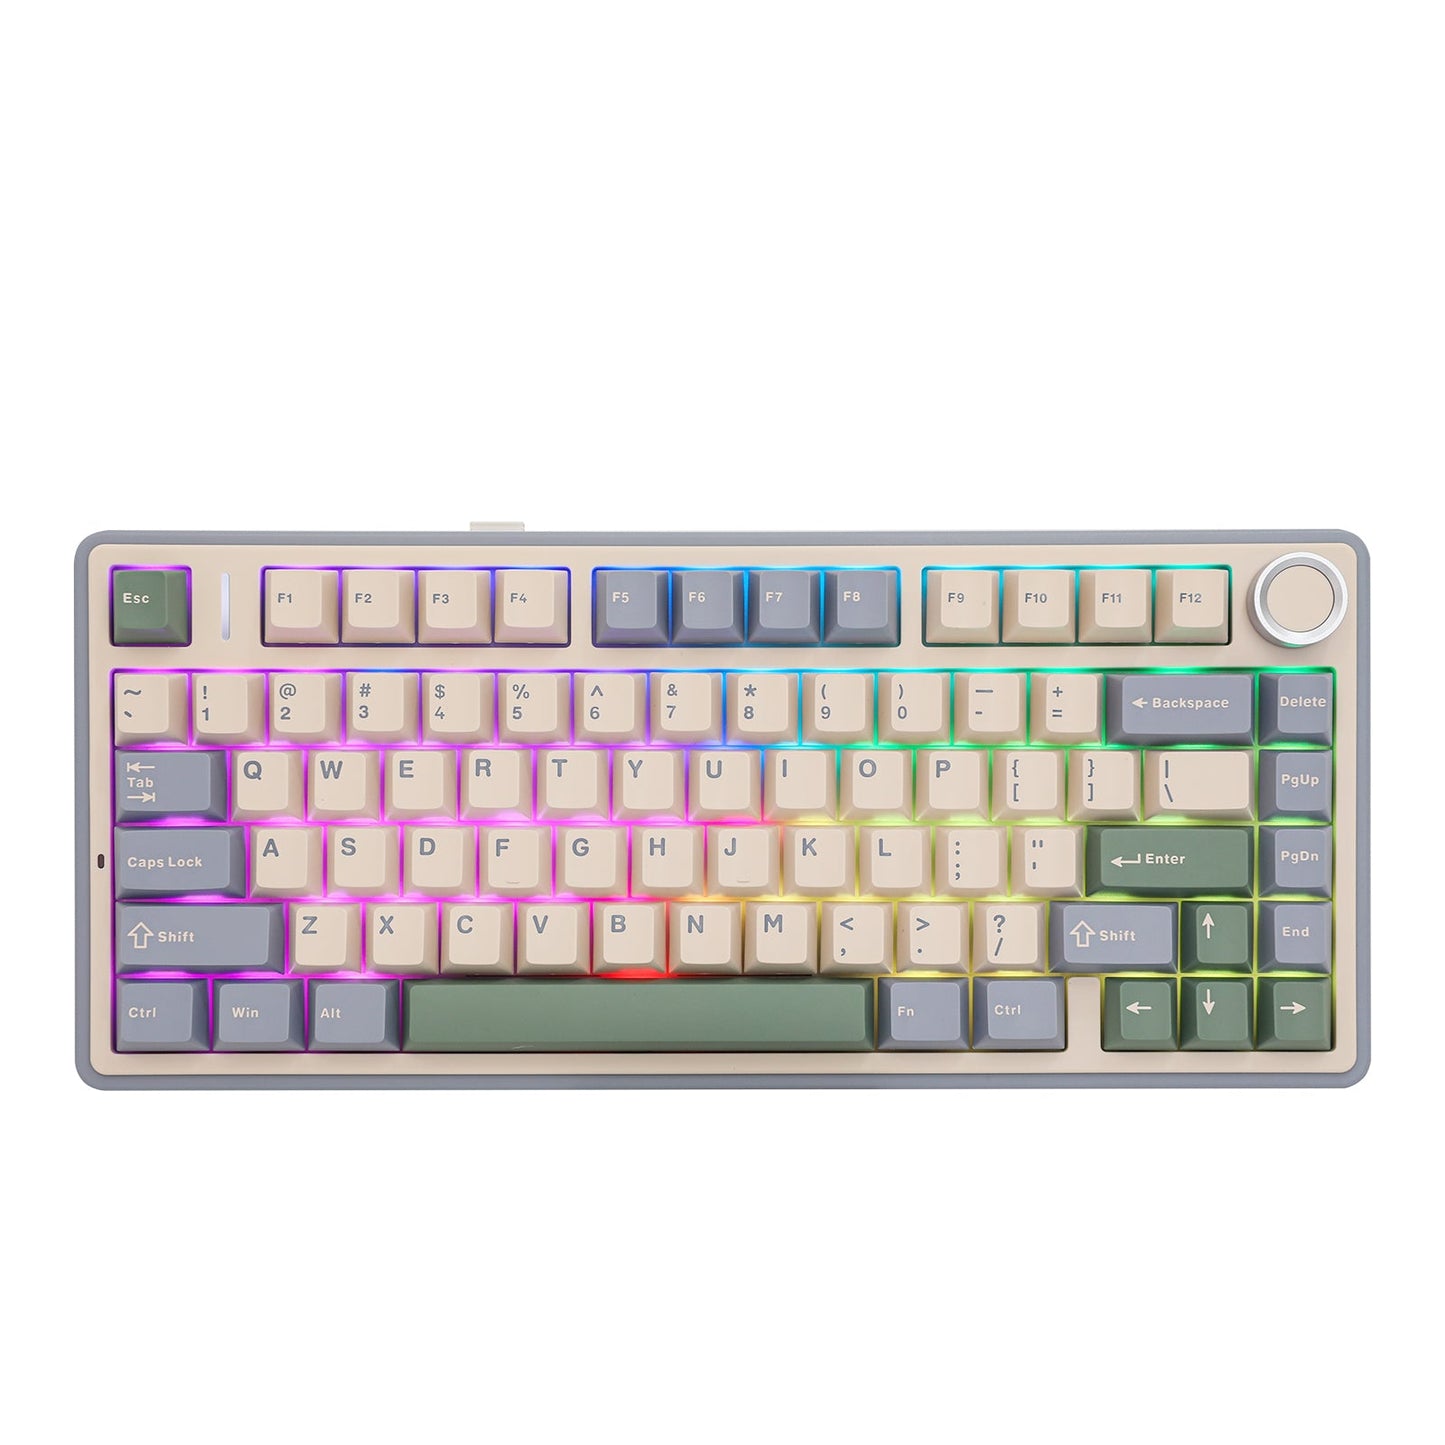 EPOMAKER X AULA F75 Mechanical Tri-mode RGB Gaming Keyboard